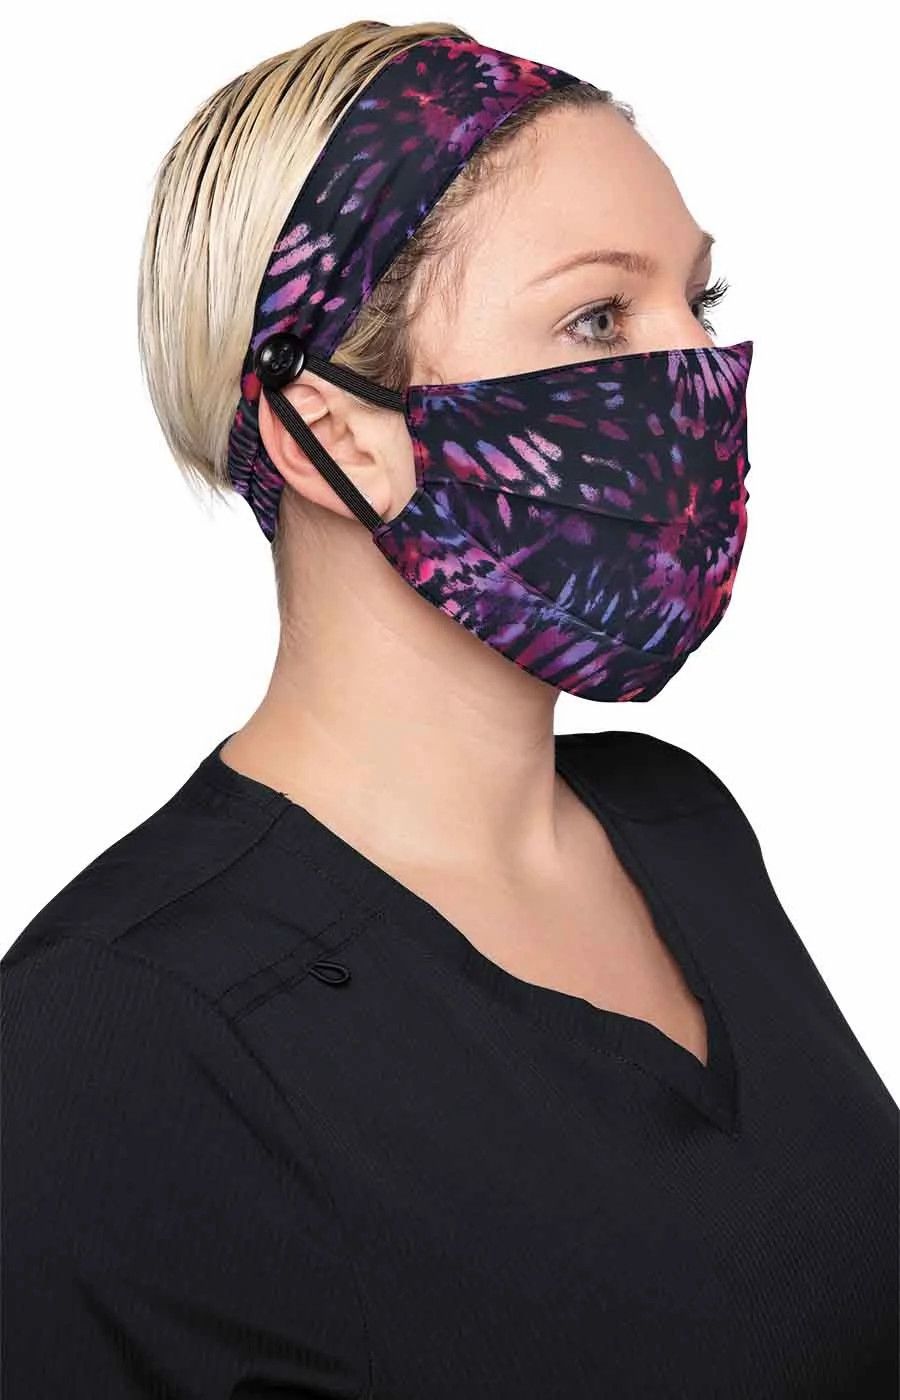 Fashion Mask + Headband Set by KOI / Spiral Tie Dye